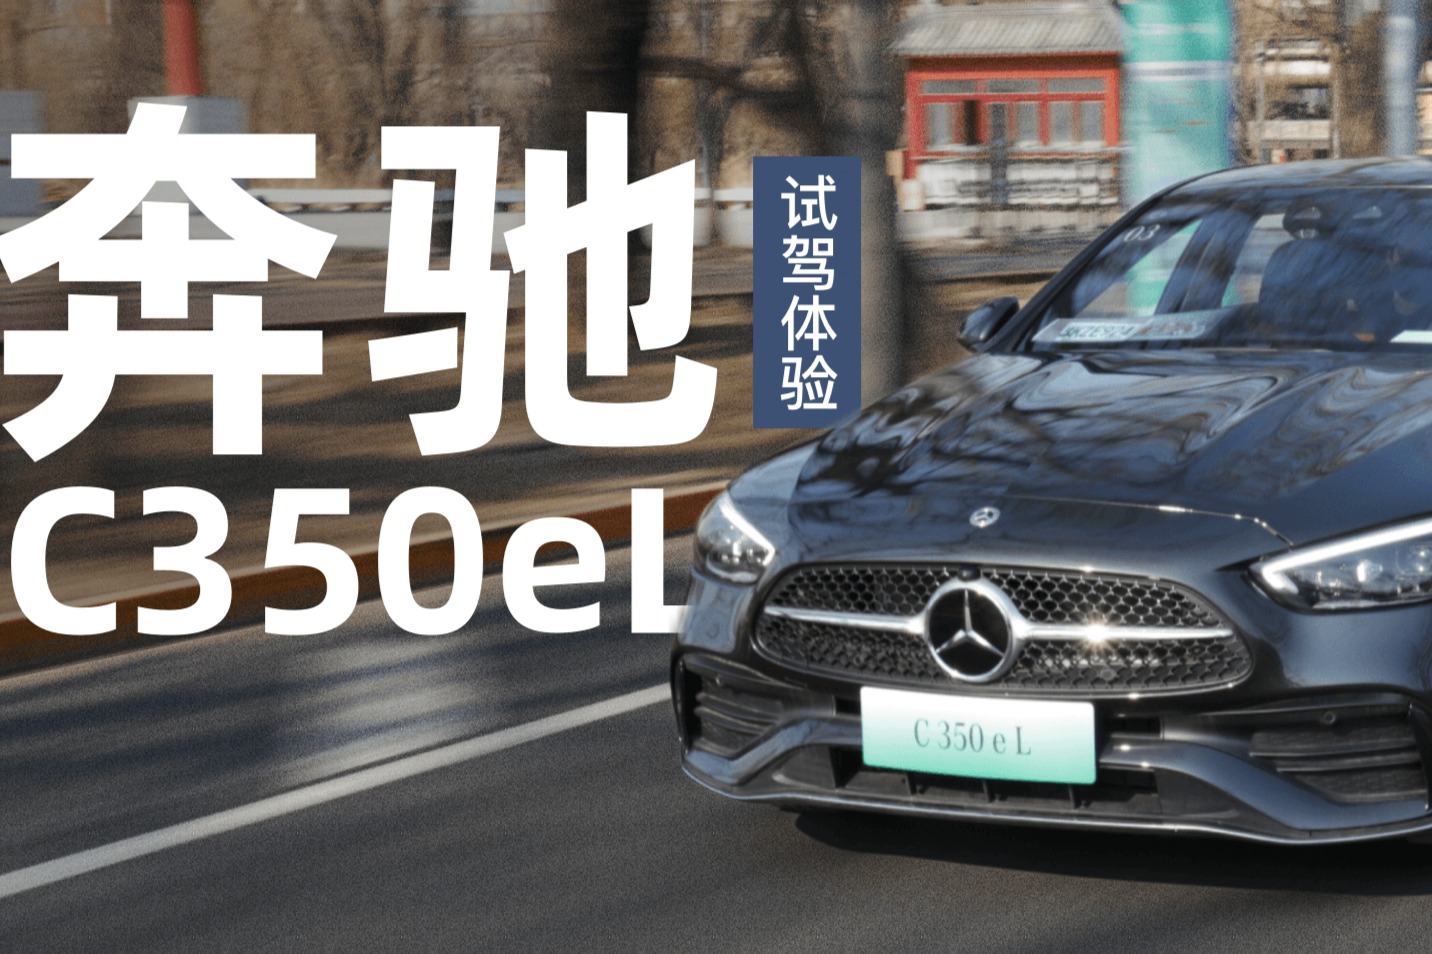 比燃油版更精致体面的小众派 北京奔驰C350 eL试驾体验